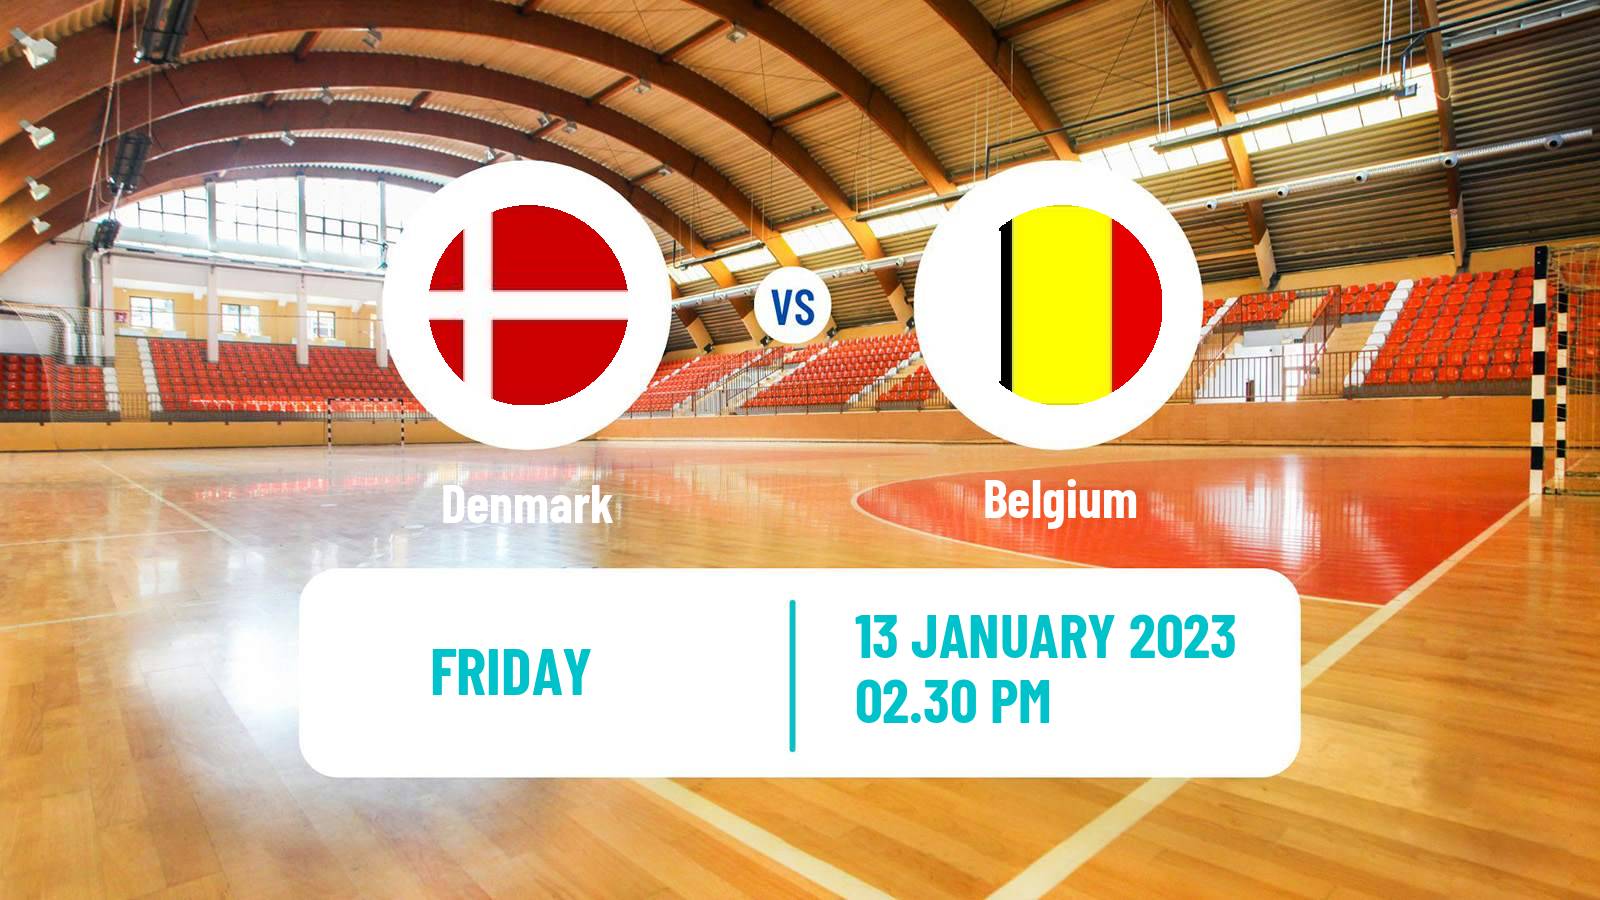 Handball Handball World Championship Denmark - Belgium